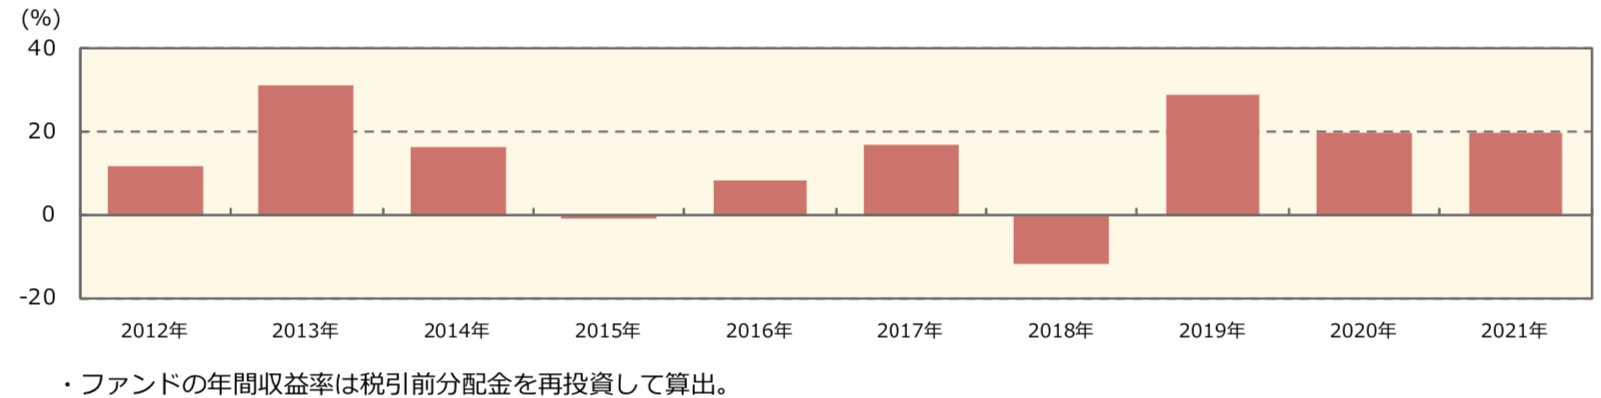 野村ワールドスター オープンの年間収益率の推移（暦年ベース）